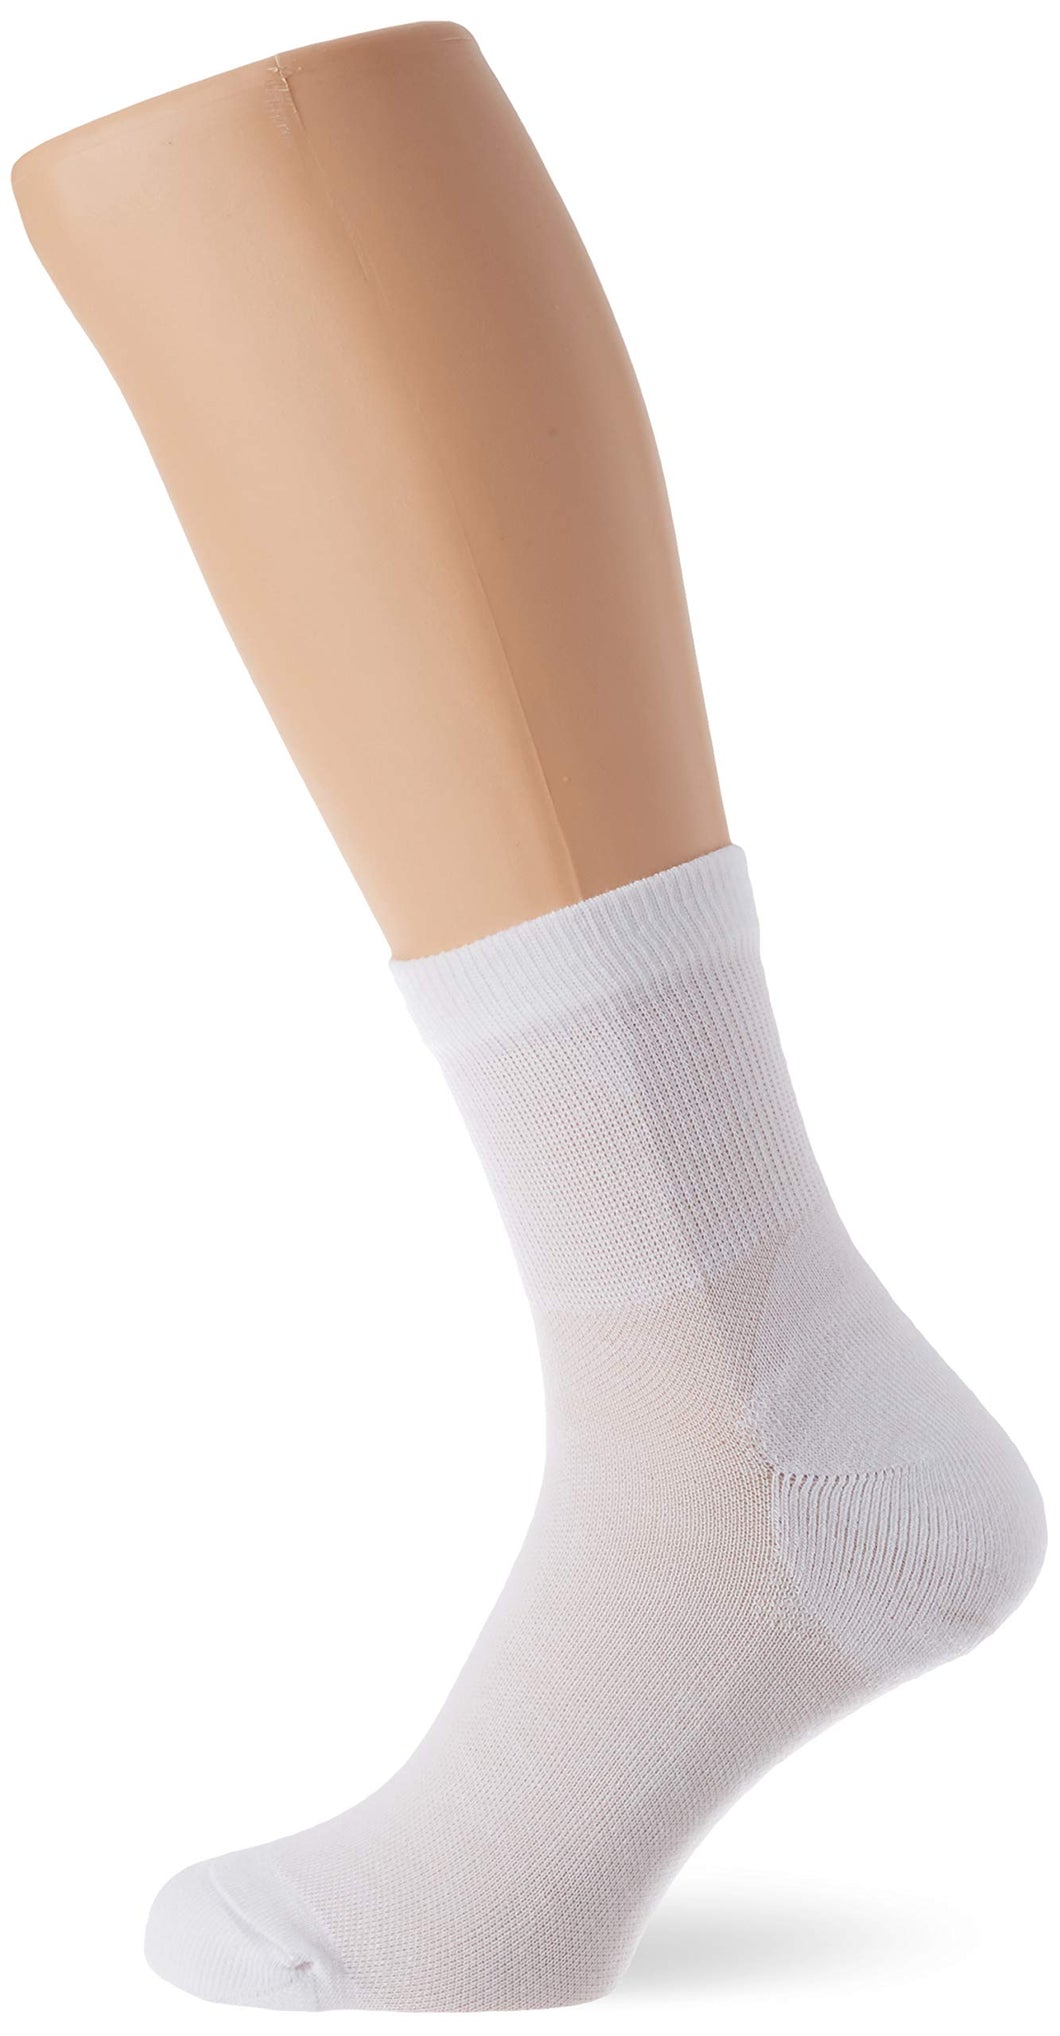 odlo(オドロ) Socks Quarter Active Quater 2 Pack Calze Unisex - Adulto